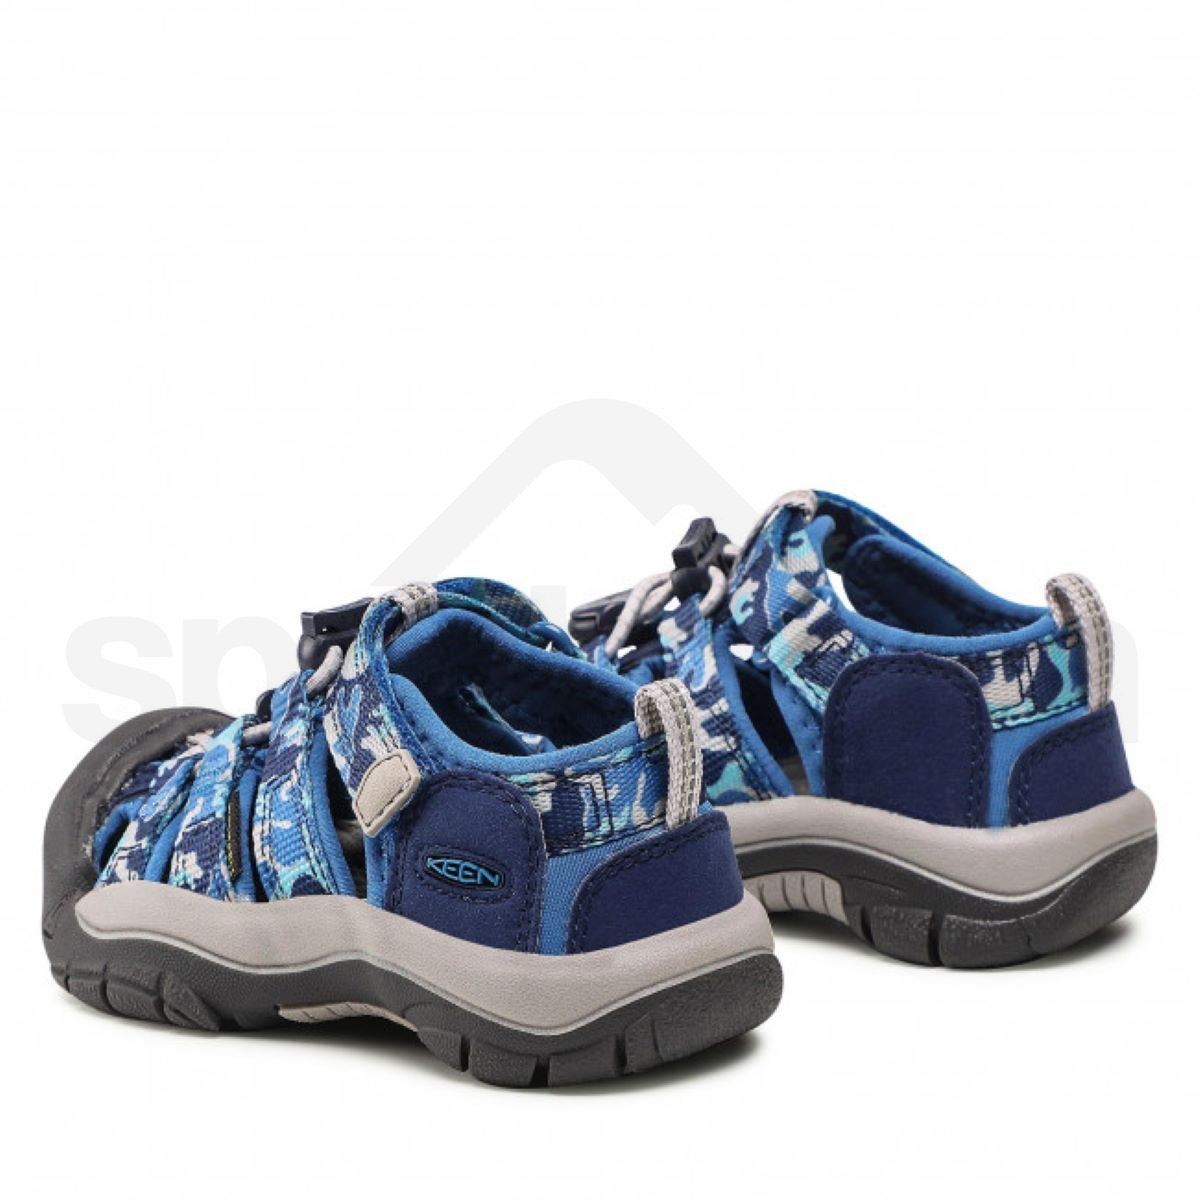 Obuv - sandály Keen Newport H2 K - světle modrá/tmavě modrá